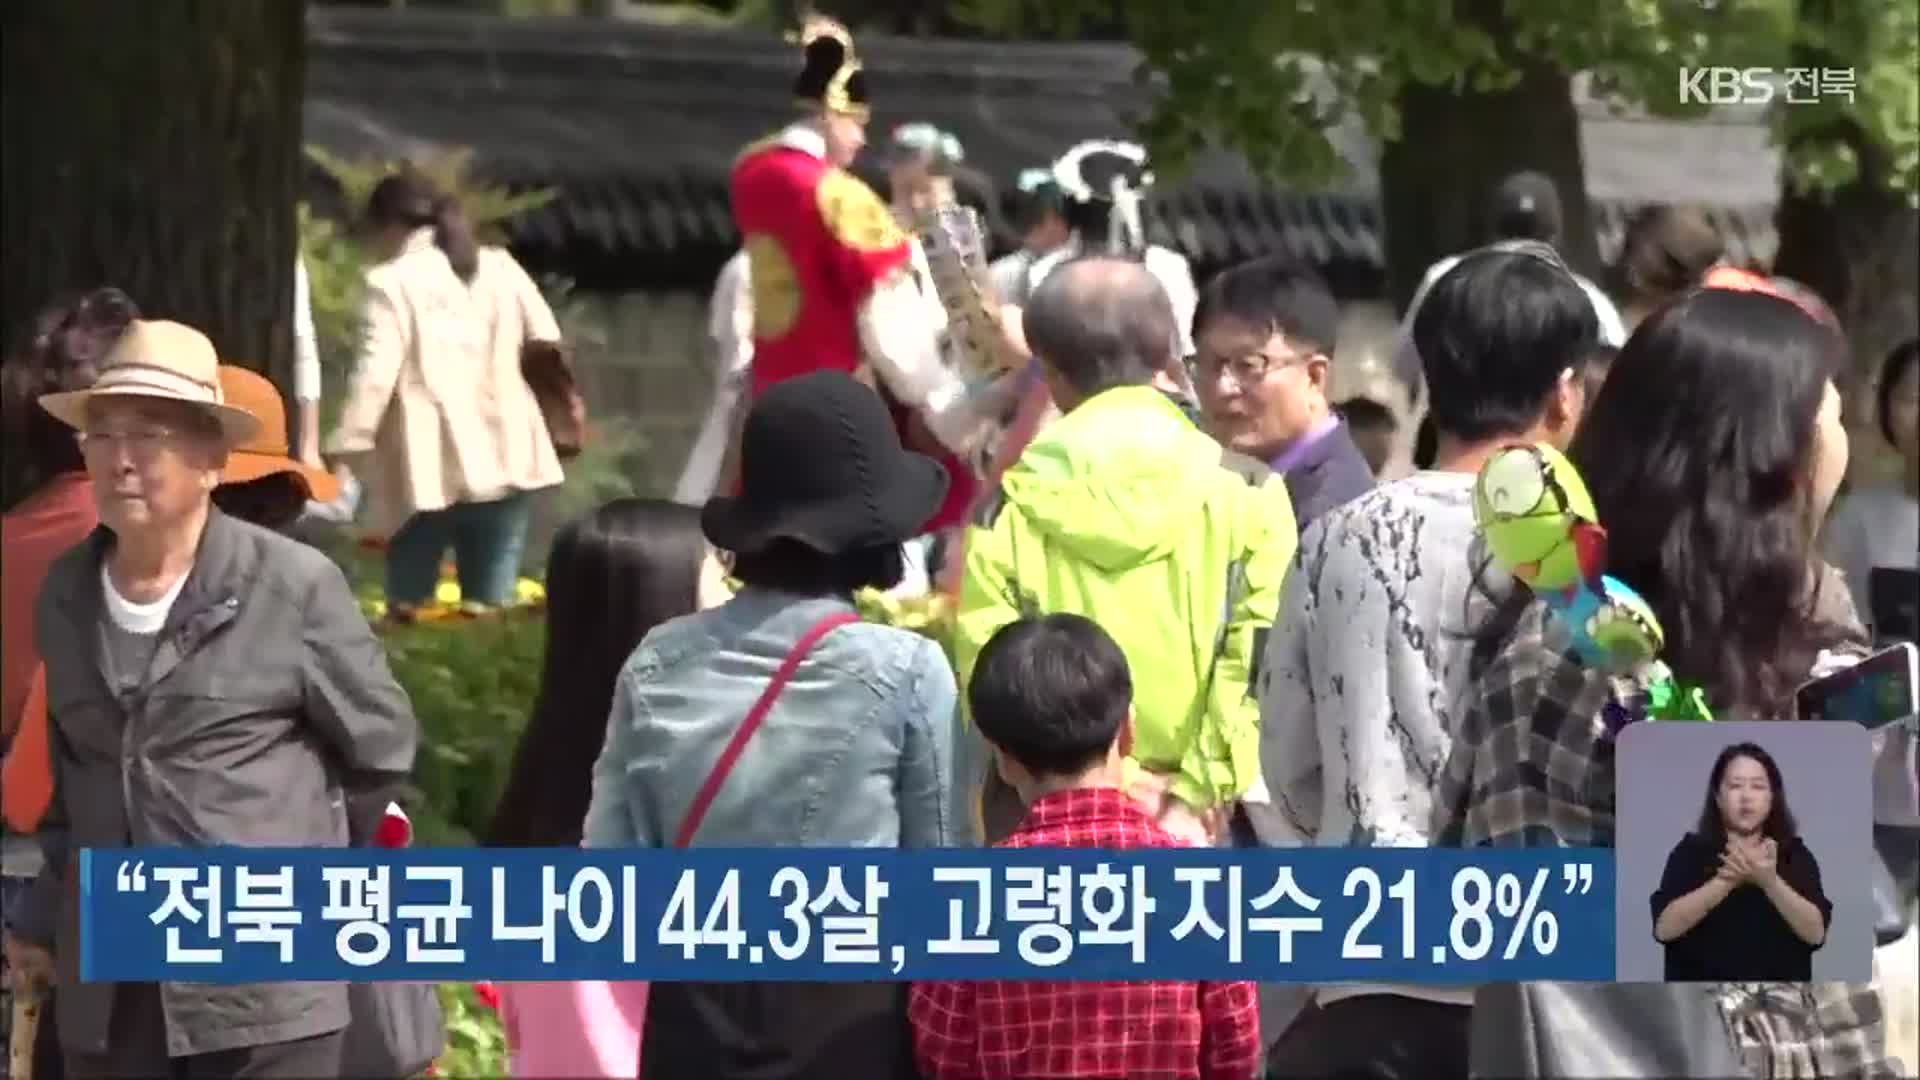 “전북 평균 나이 44.3살, 고령화 지수 21.8%”